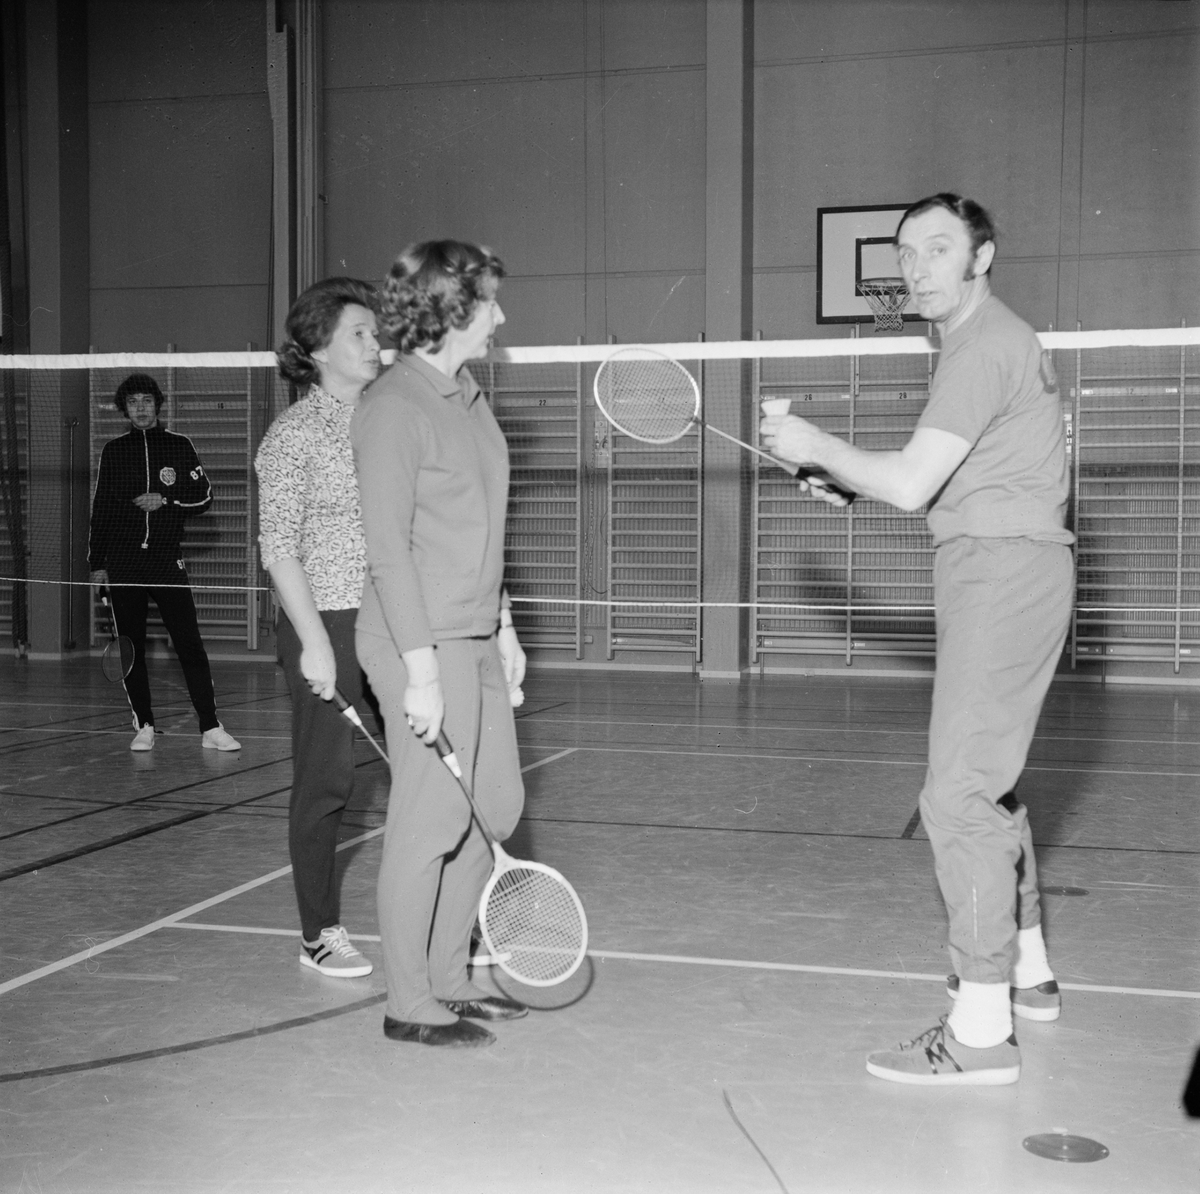 Badmintonkurs, Tierp, Uppland 1972